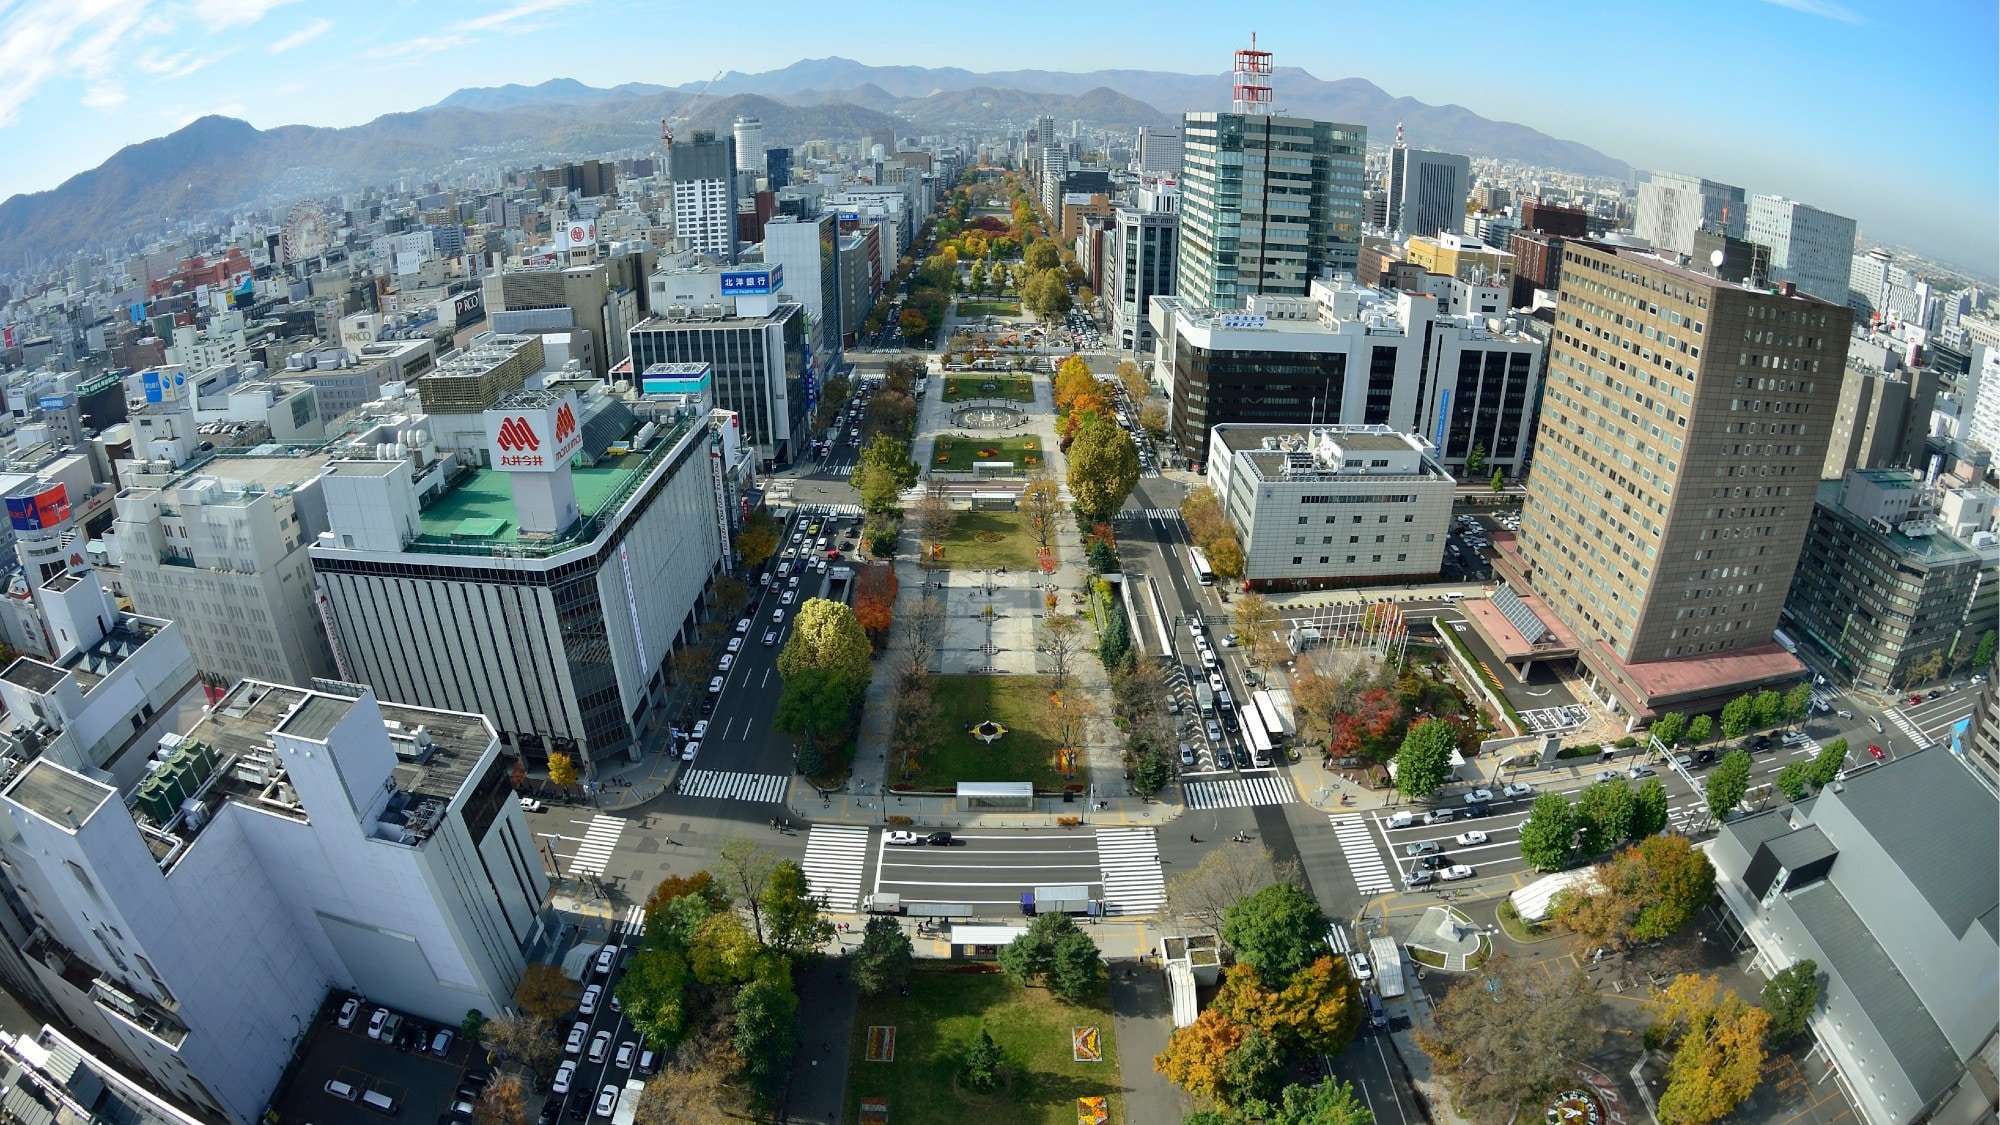 Odori Park (TV Tower view)